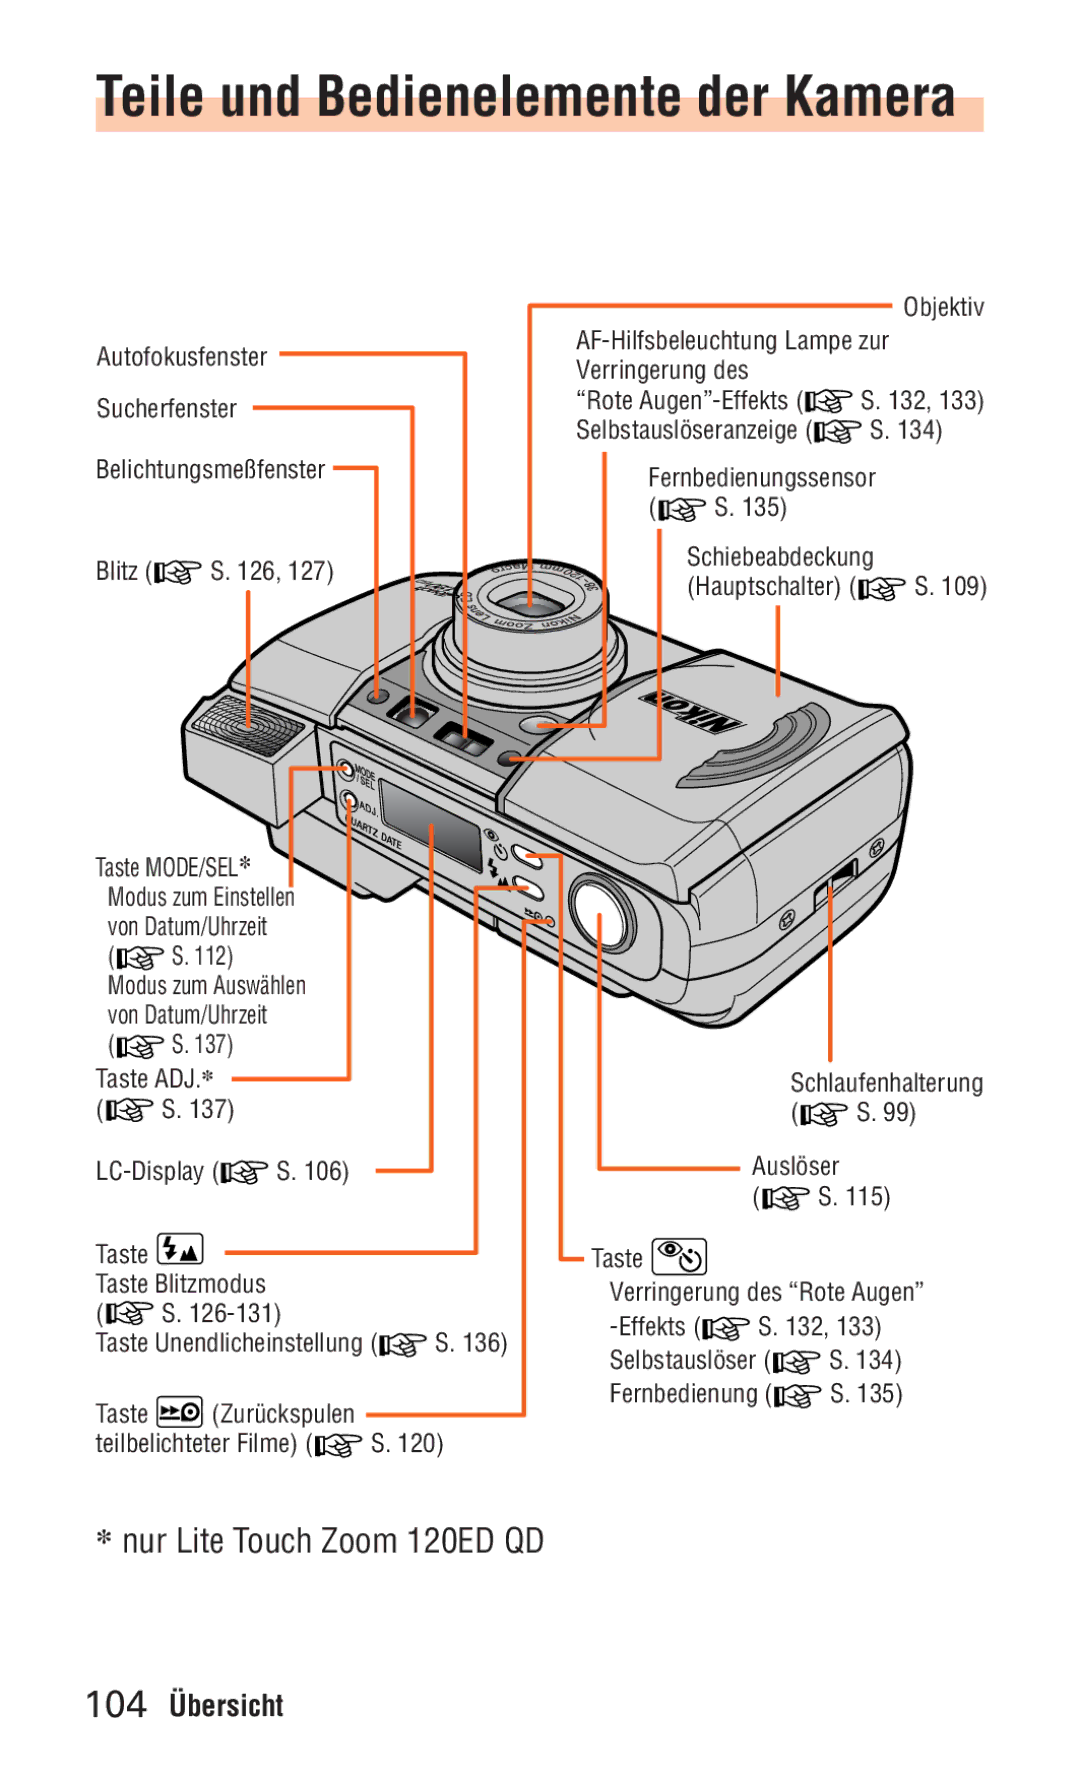 Nikon ED 120 instruction manual Teile und Bedienelemente der Kamera, 104 Übersicht 